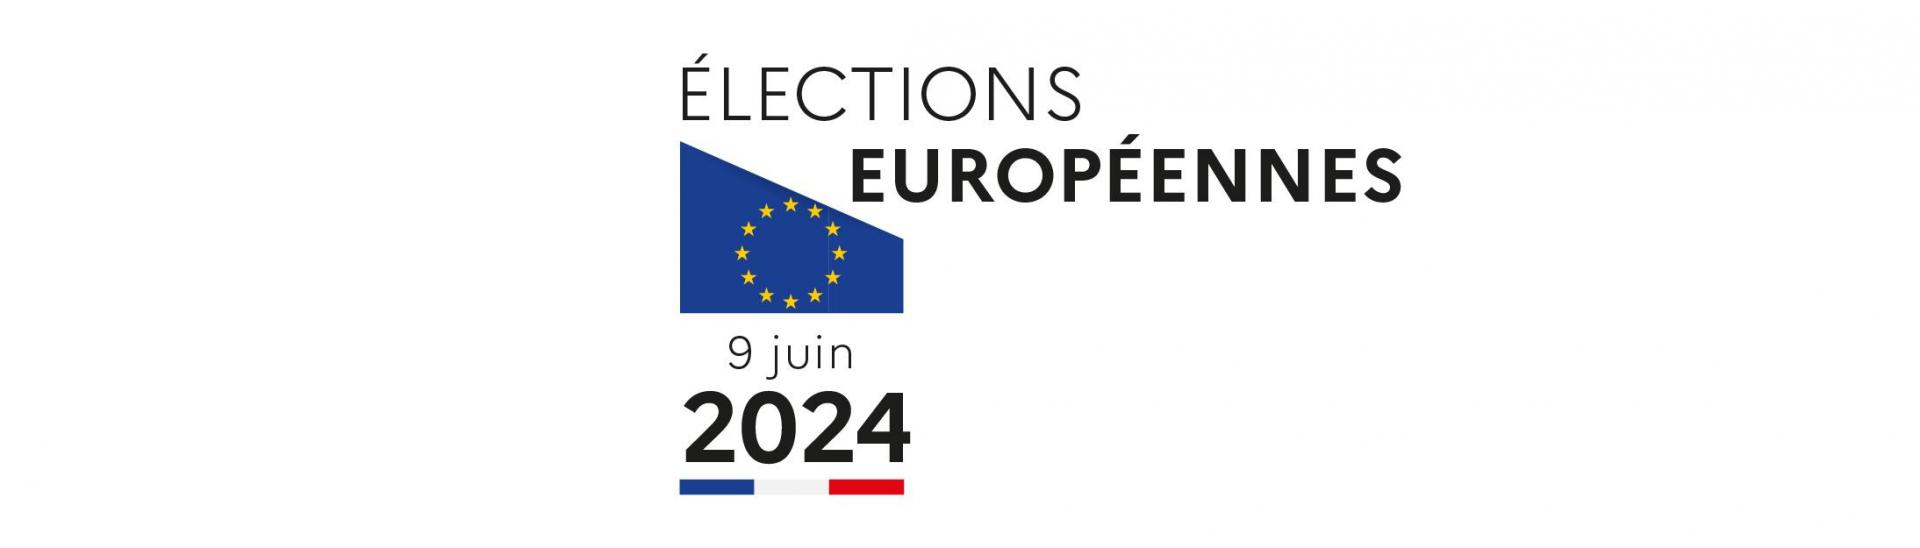 Bannière blanche avec drapeau européen annonçant la date d'election